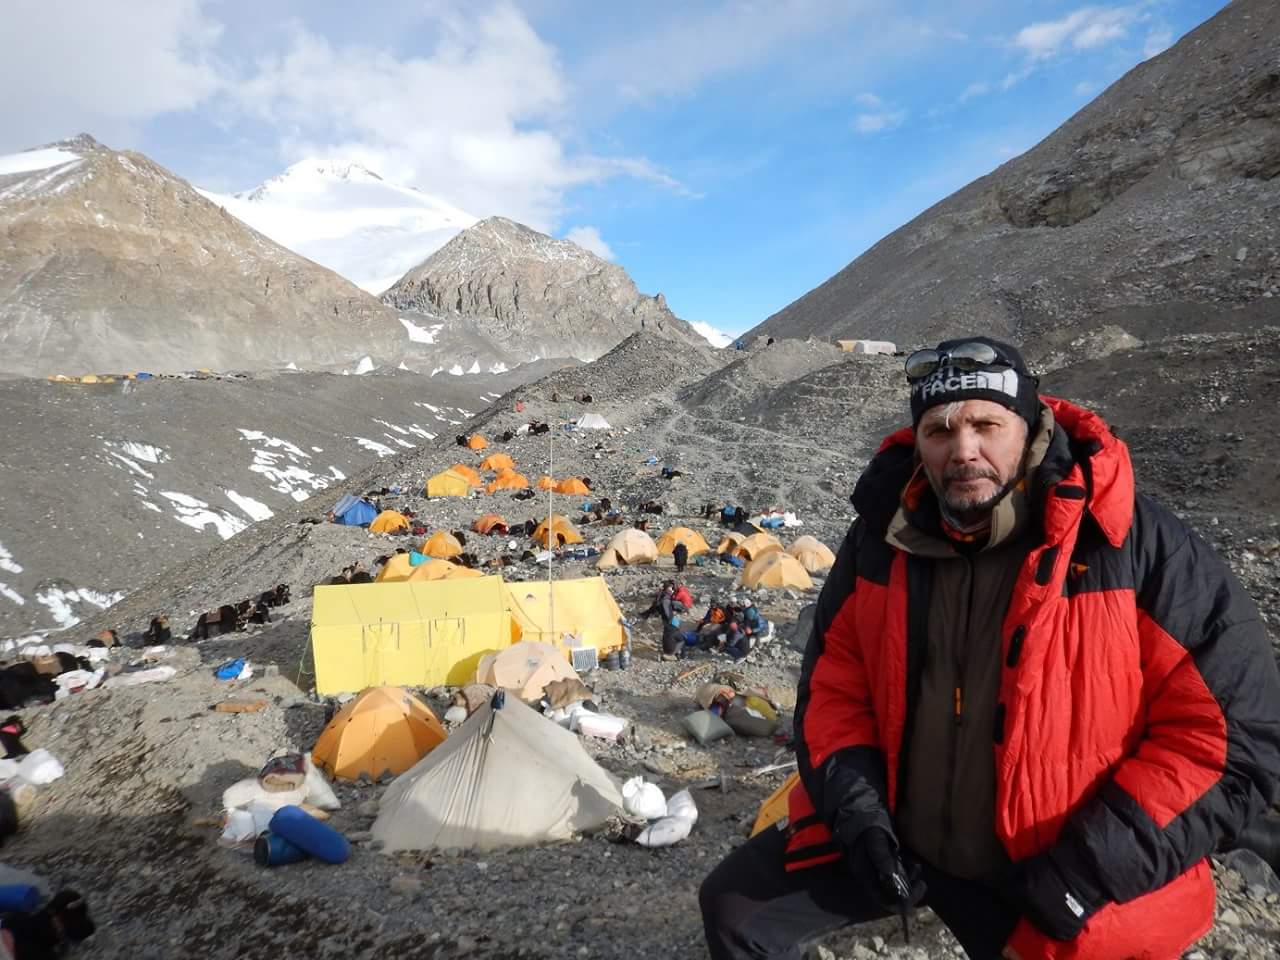 Сергей Ковалёв в Базовом лагере Эвереста в апреле 2017. Фото из архива экспедиции.